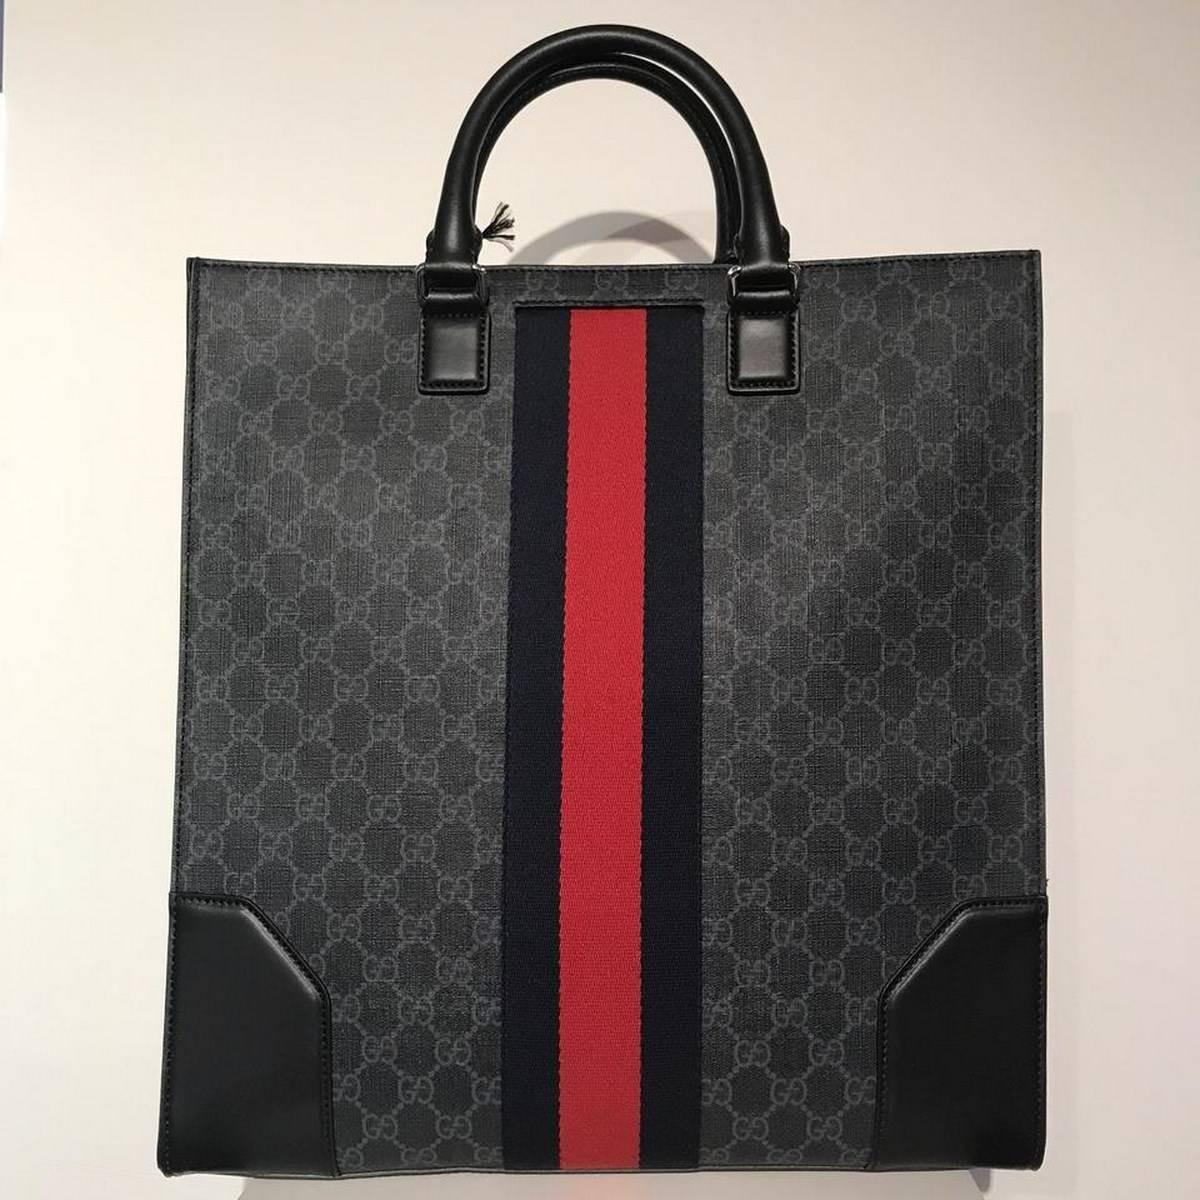 Gucci Black Canvas GG Supreme Tote Bag
Size: 11